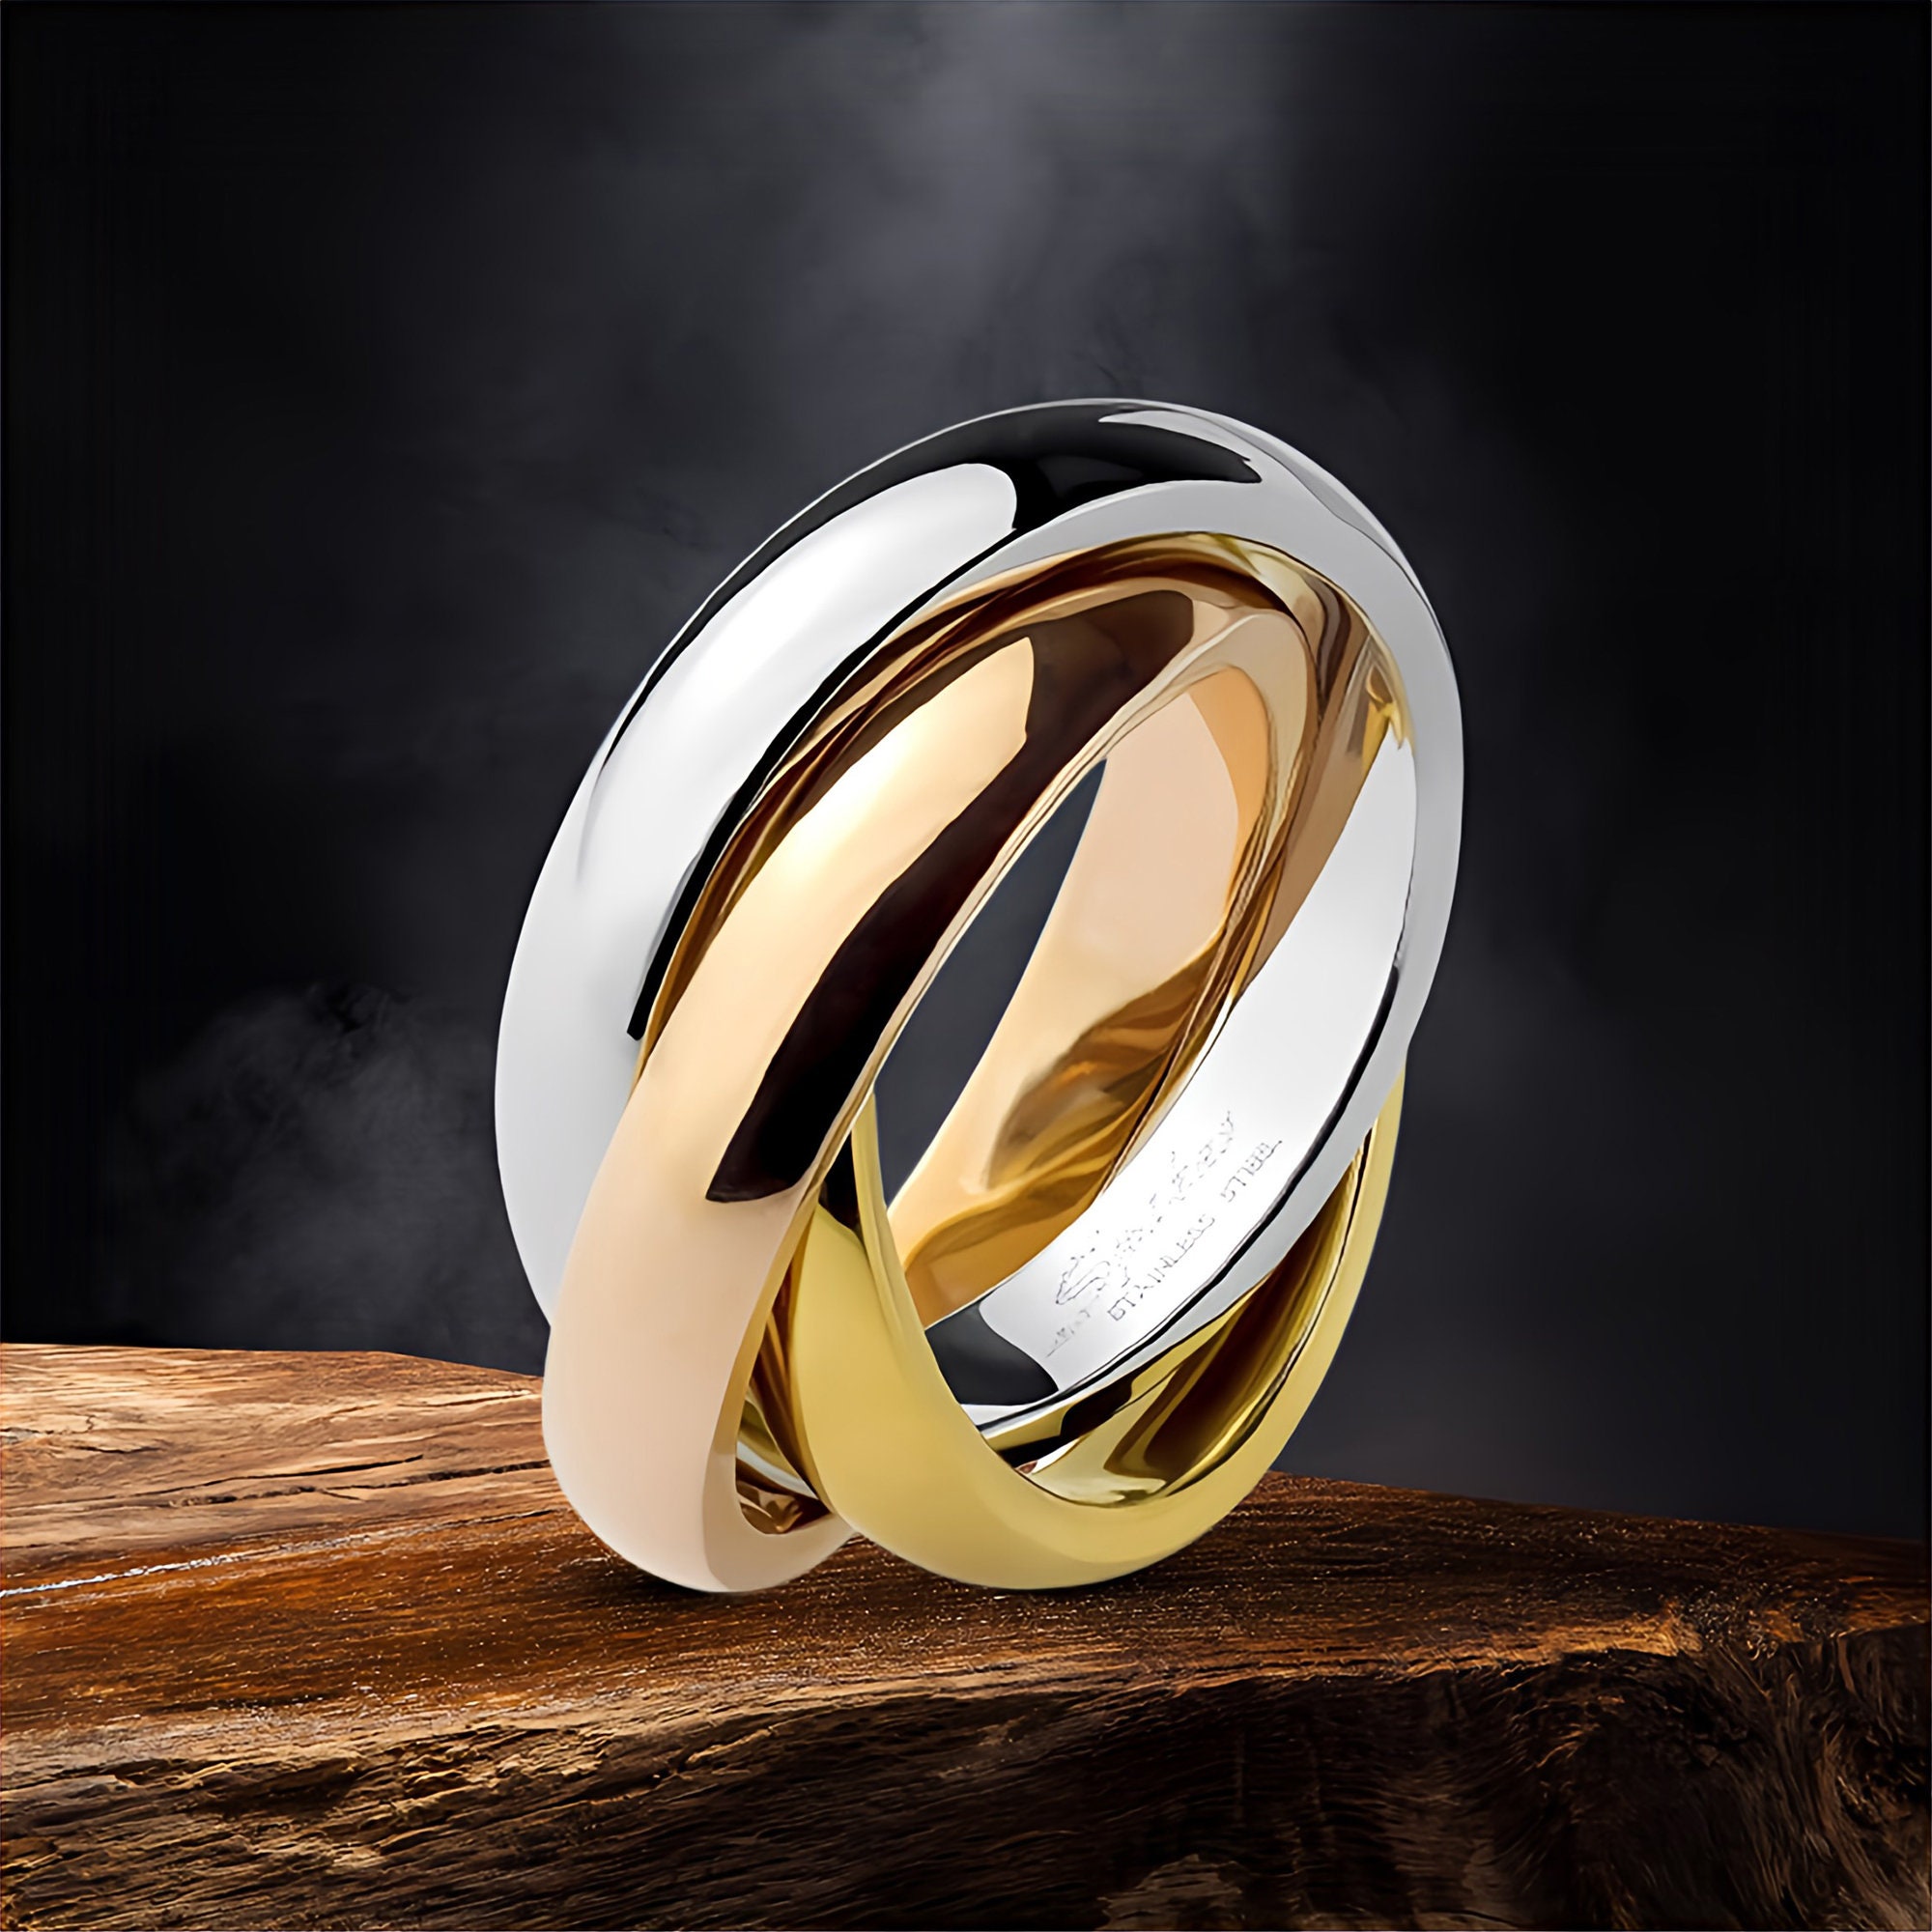 Couple Rings | Finger Rings | Cross Ring | Jewelry - Hollow Cross Ring Men  Jewelry Women - Aliexpress